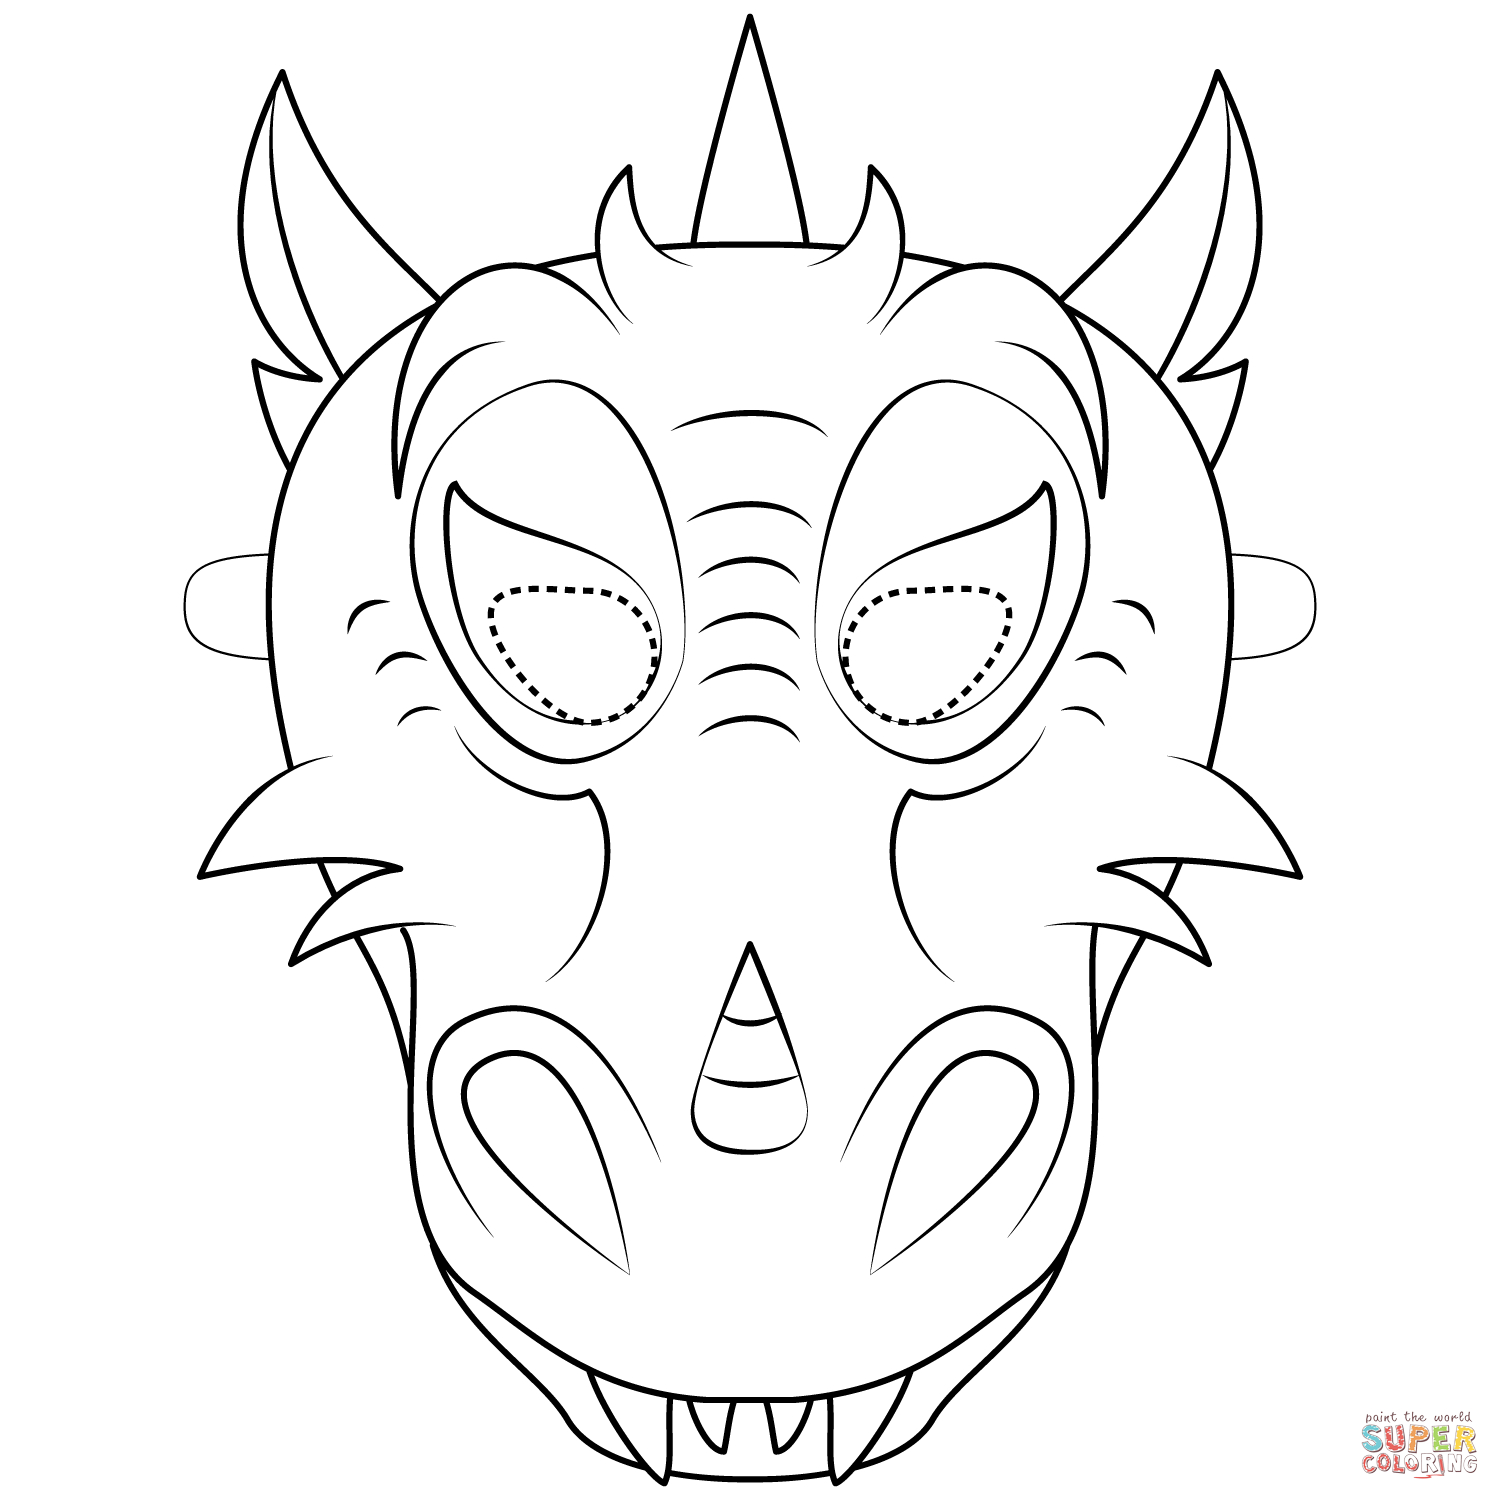 Dragon Mask Coloring Page | Free Printable Coloring Pages - Dragon Mask Printable Free